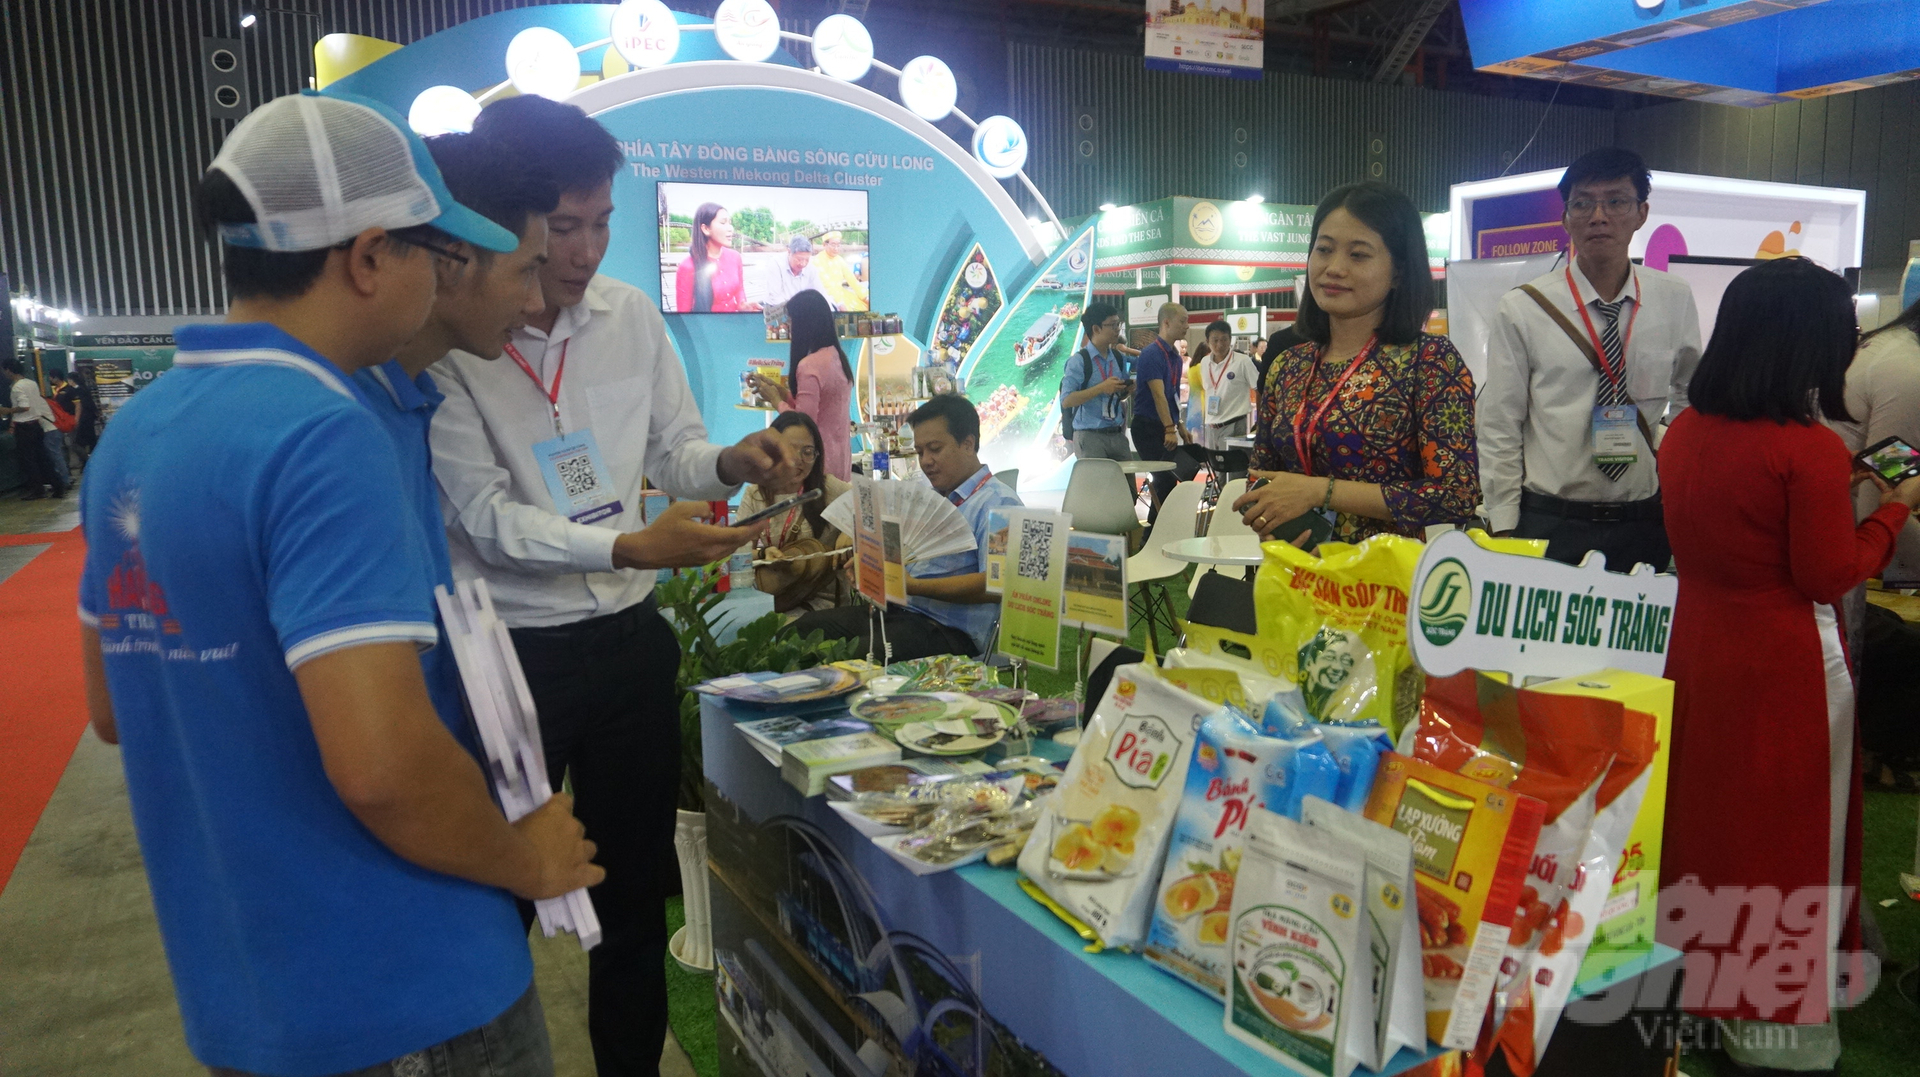 Tỉnh Sóc Trăng giới thiệu các sản phẩm du lịch gắn với sản phẩm nông nghiệp đặc trưng của địa phương. Ảnh: Nguyễn Thủy.